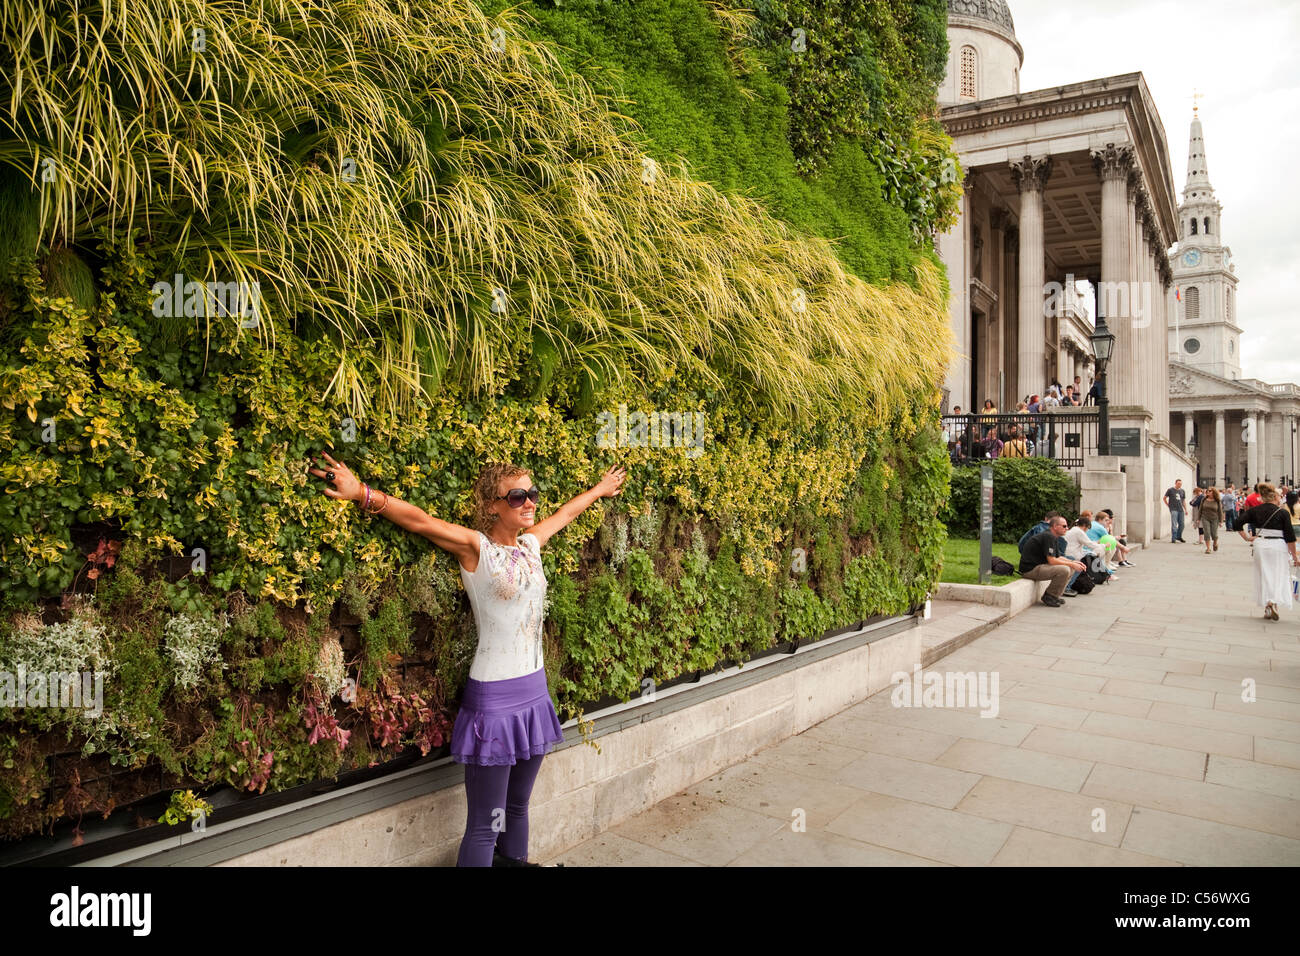 Un touriste photographié devant 'Une vie masterpiece' - Trafalgar Square London UK Banque D'Images